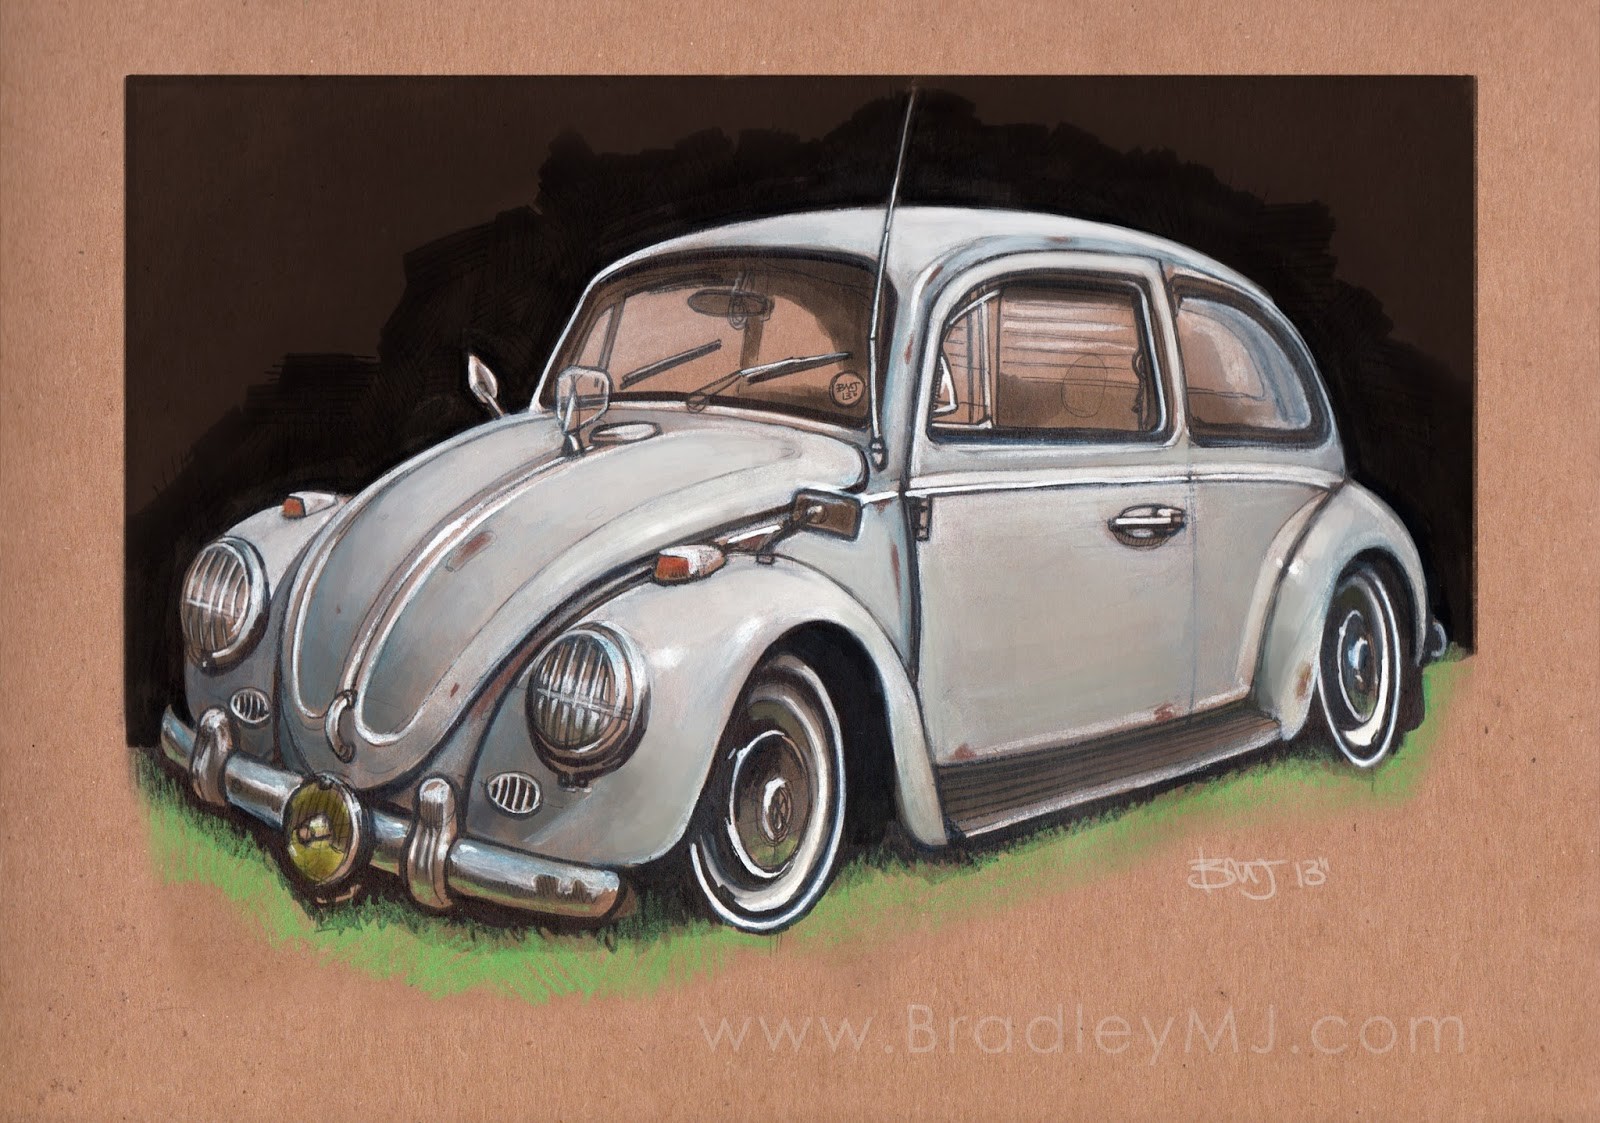 Old Bug, VW festival Norwich, UK